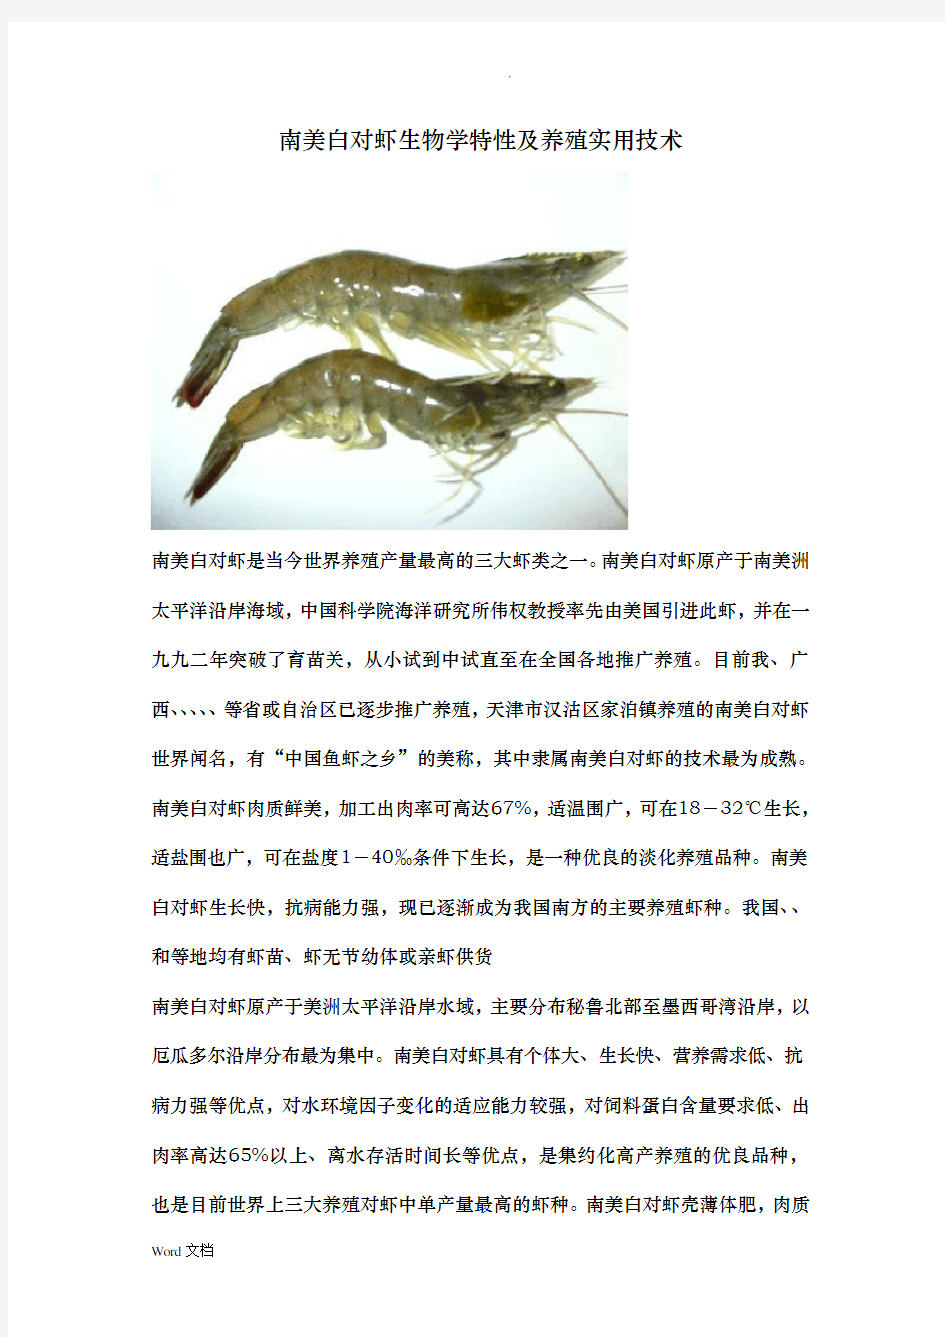 对虾生物学特性及常见病害